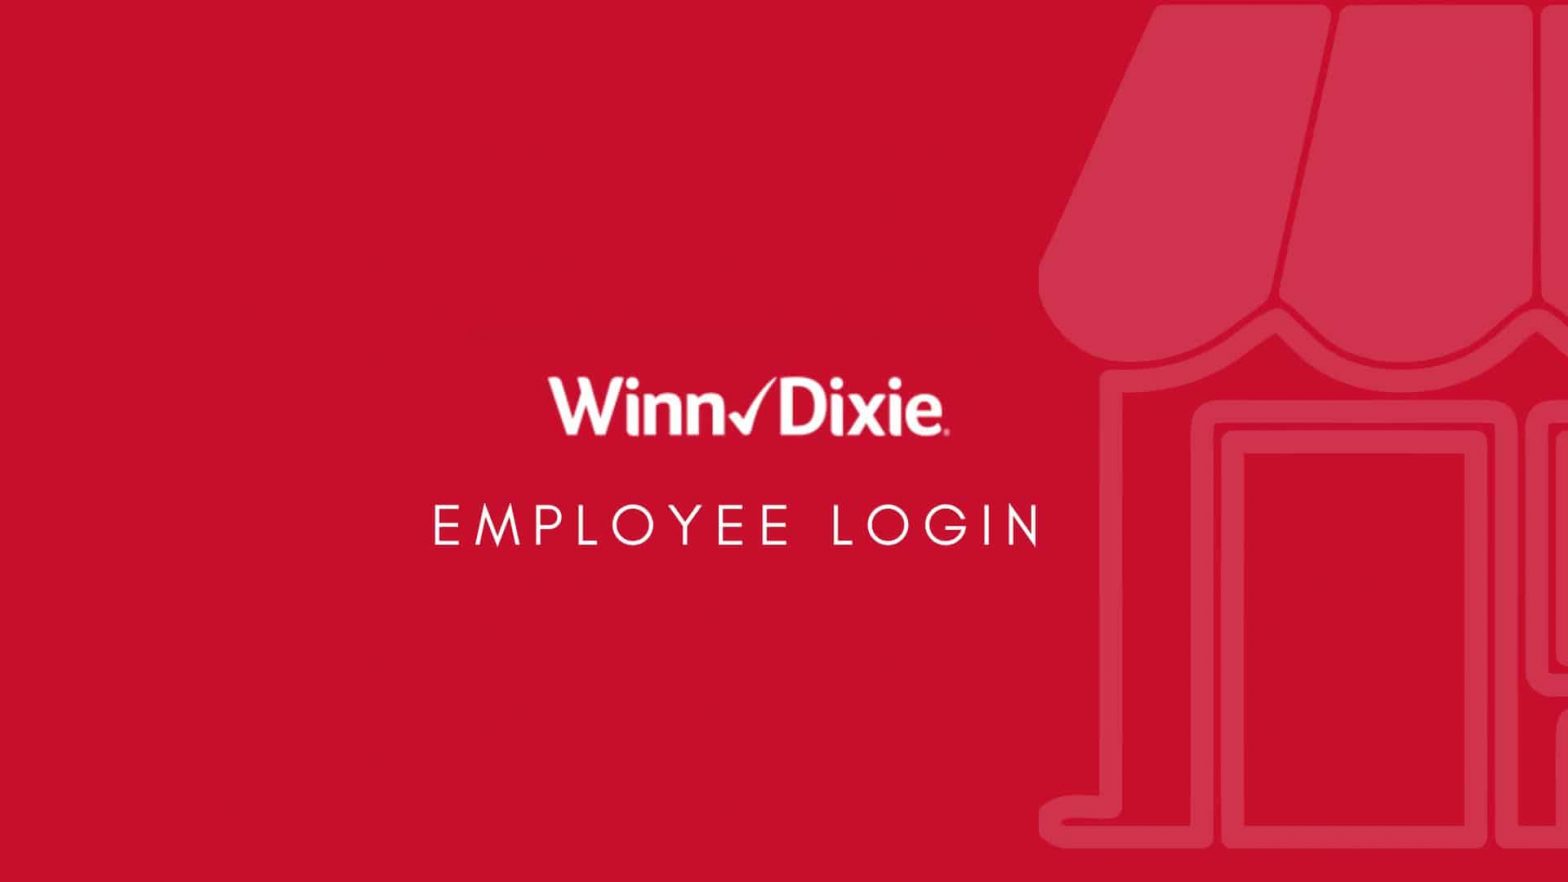 Winn Dixie employee login